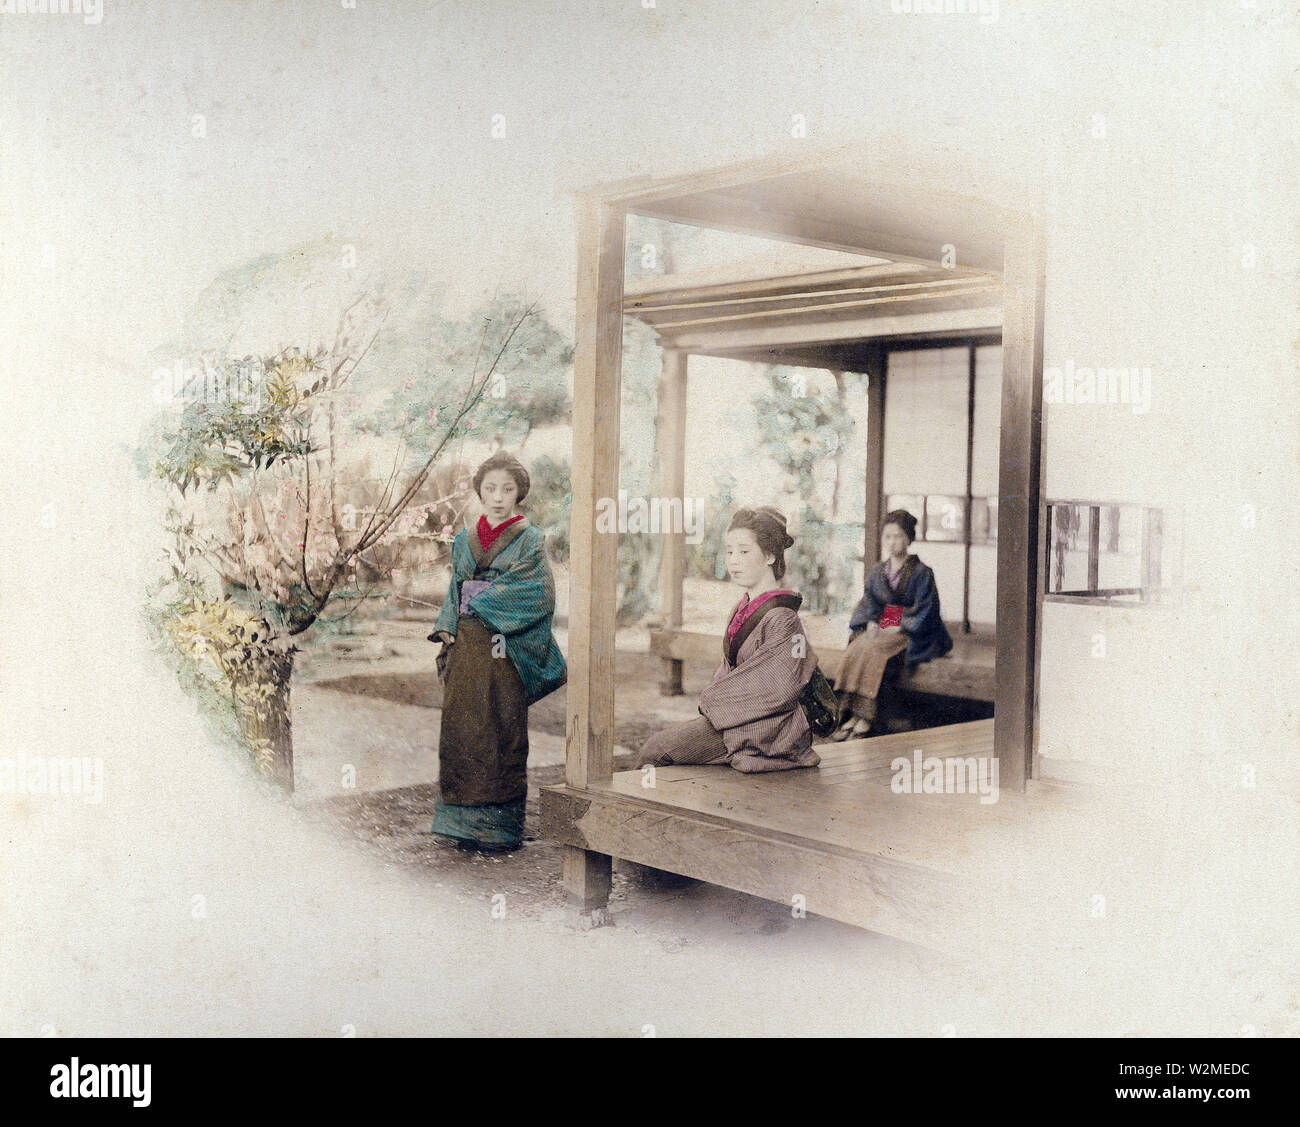 [1880s Japan - Drei japanische Frauen in einem Wohngebiet Veranda] - Drei Frauen im Kimono und traditionellen Frisuren in einem traditionellen japanischen Haus, 1880. Zwei Frauen sitzen auf der engawa, eine Veranda - wie Erweiterung des Hauses. 19 Vintage albumen Foto. Stockfoto